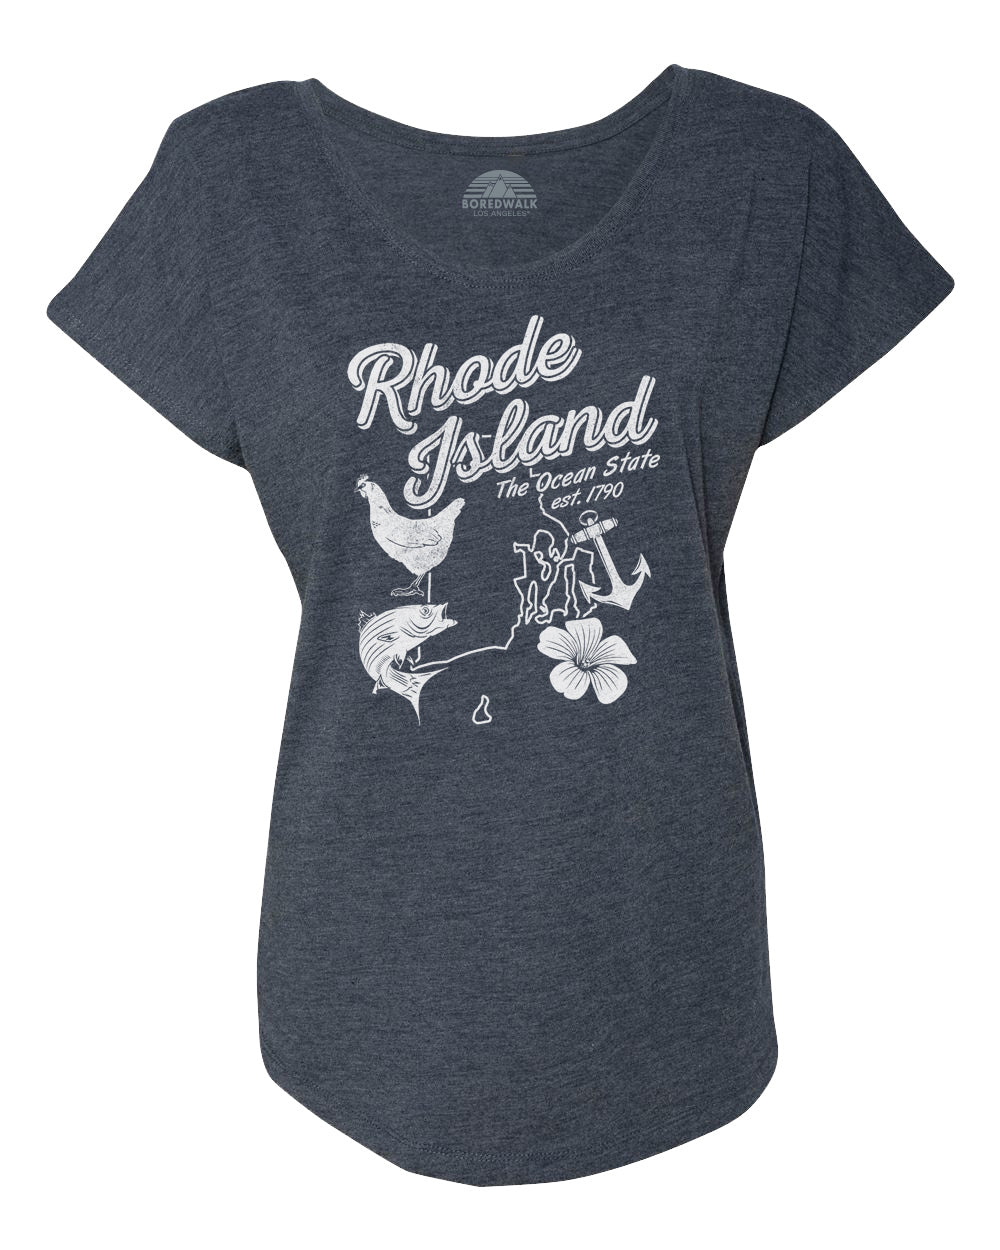 Women's Vintage Rhode Island Scoop Neck T-Shirt